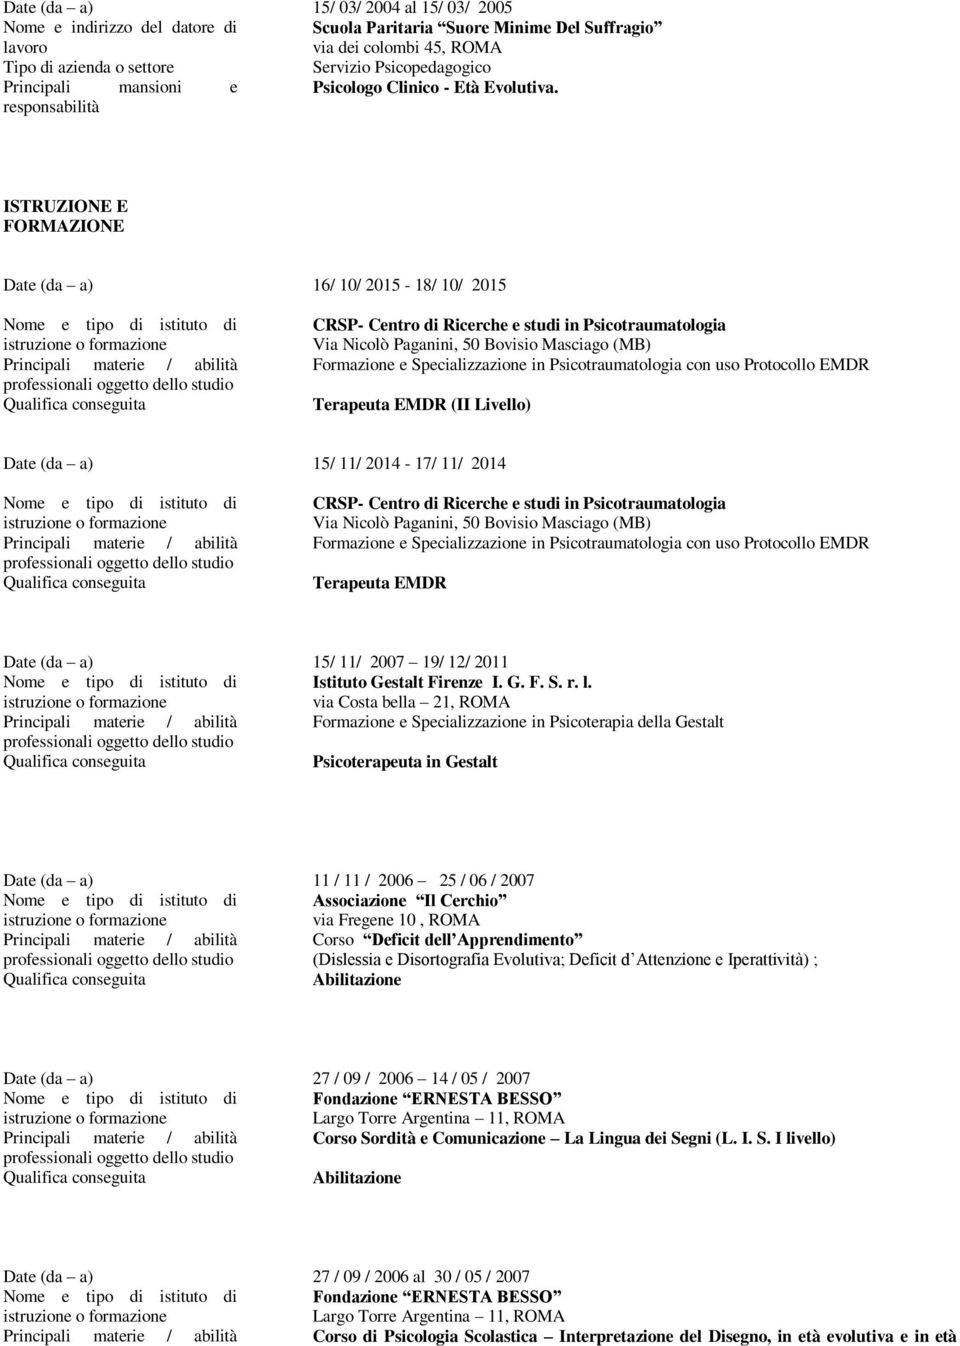 Formazione e Specializzazione in Psicotraumatologia con uso Protocollo EMDR Terapeuta EMDR (II Livello) Date (da a) 15/ 11/ 2014-17/ 11/ 2014 Principali materie / abilità CRSP- Centro di Ricerche e